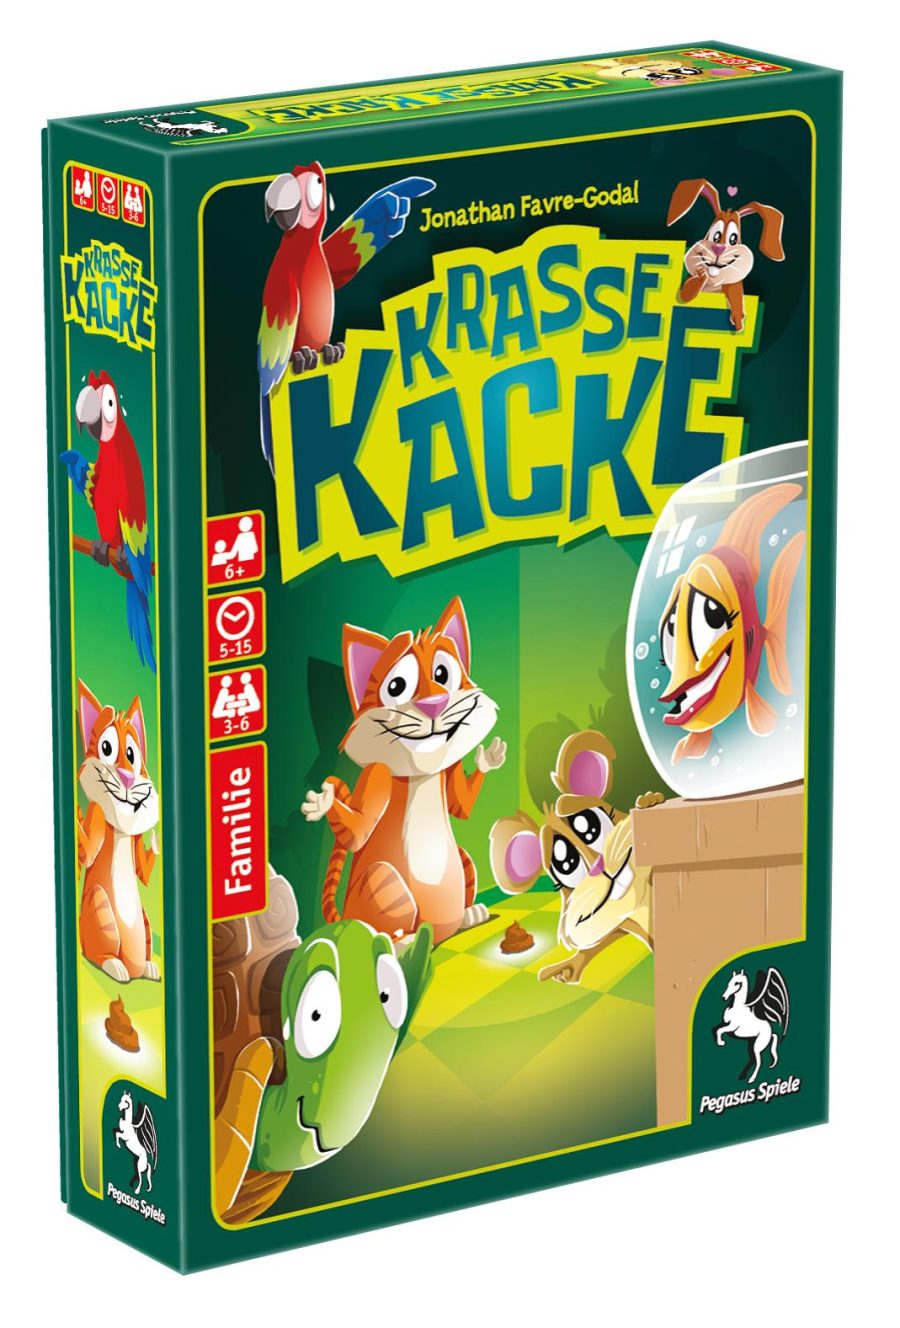 Krasse Kacke Spielanleitung - PDF Download